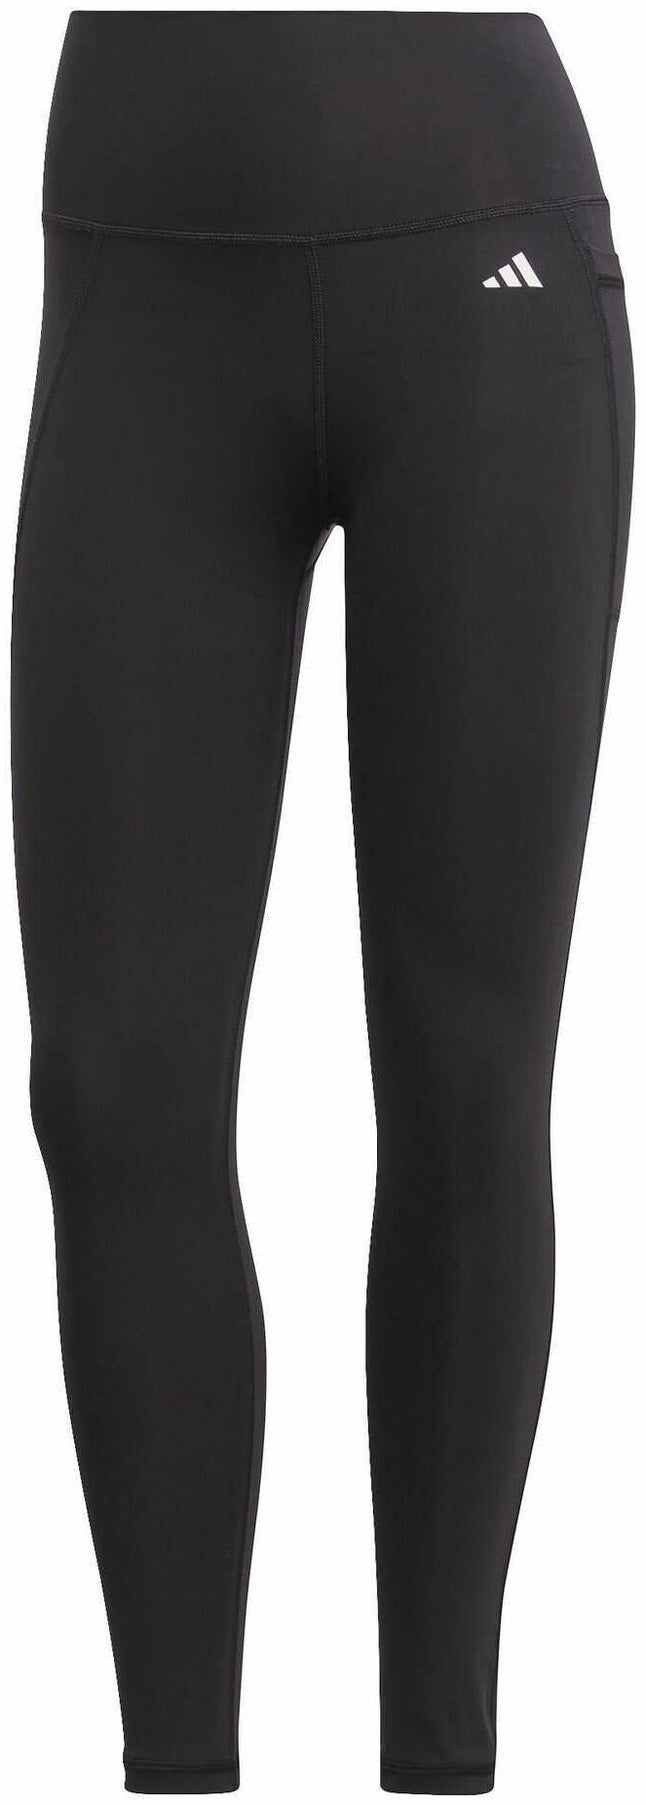 leggings for women short length : Hawthorn Athletic 7/8 Length